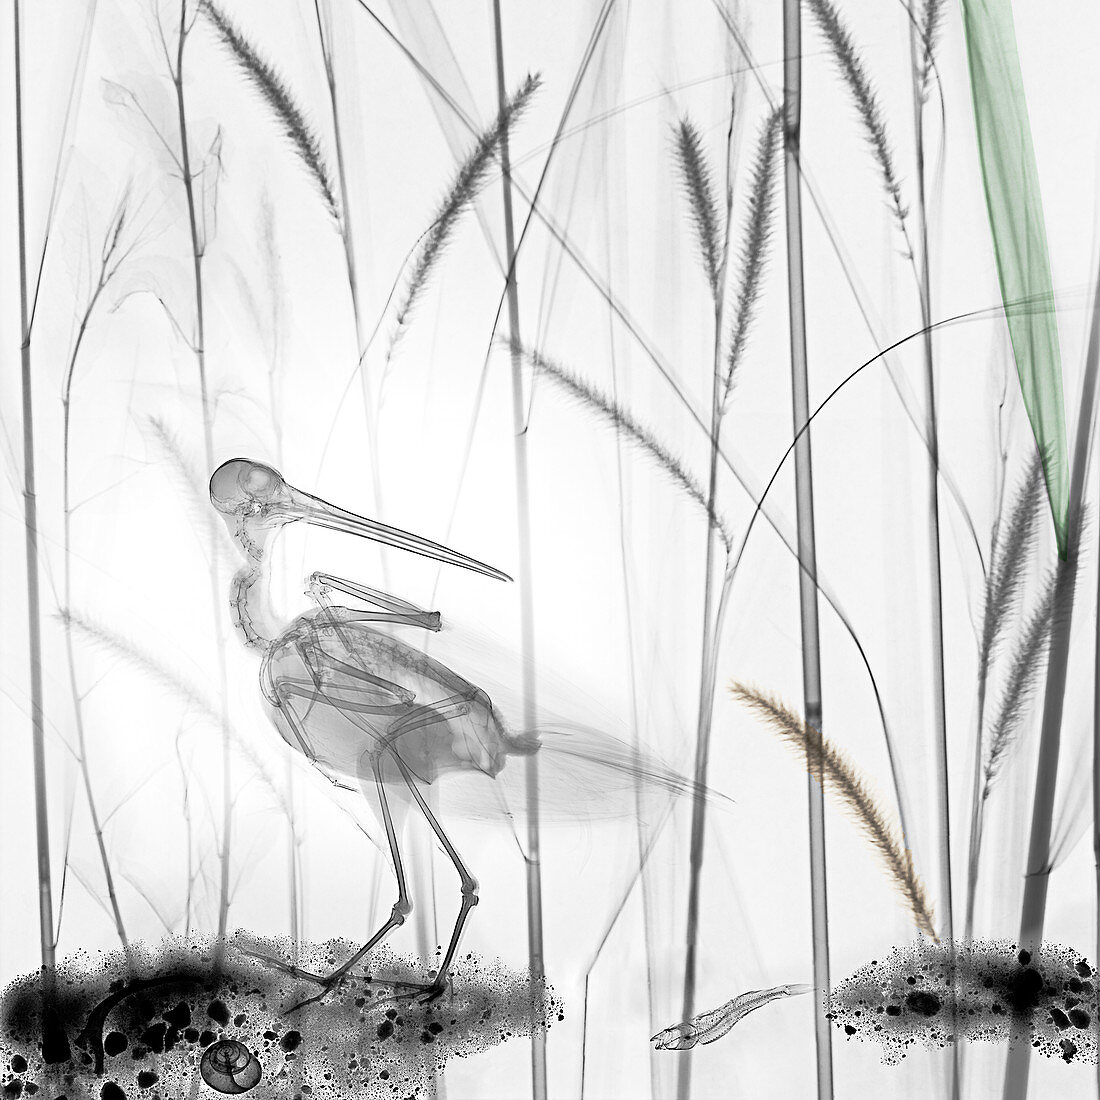 Snipe in marsh, X-ray